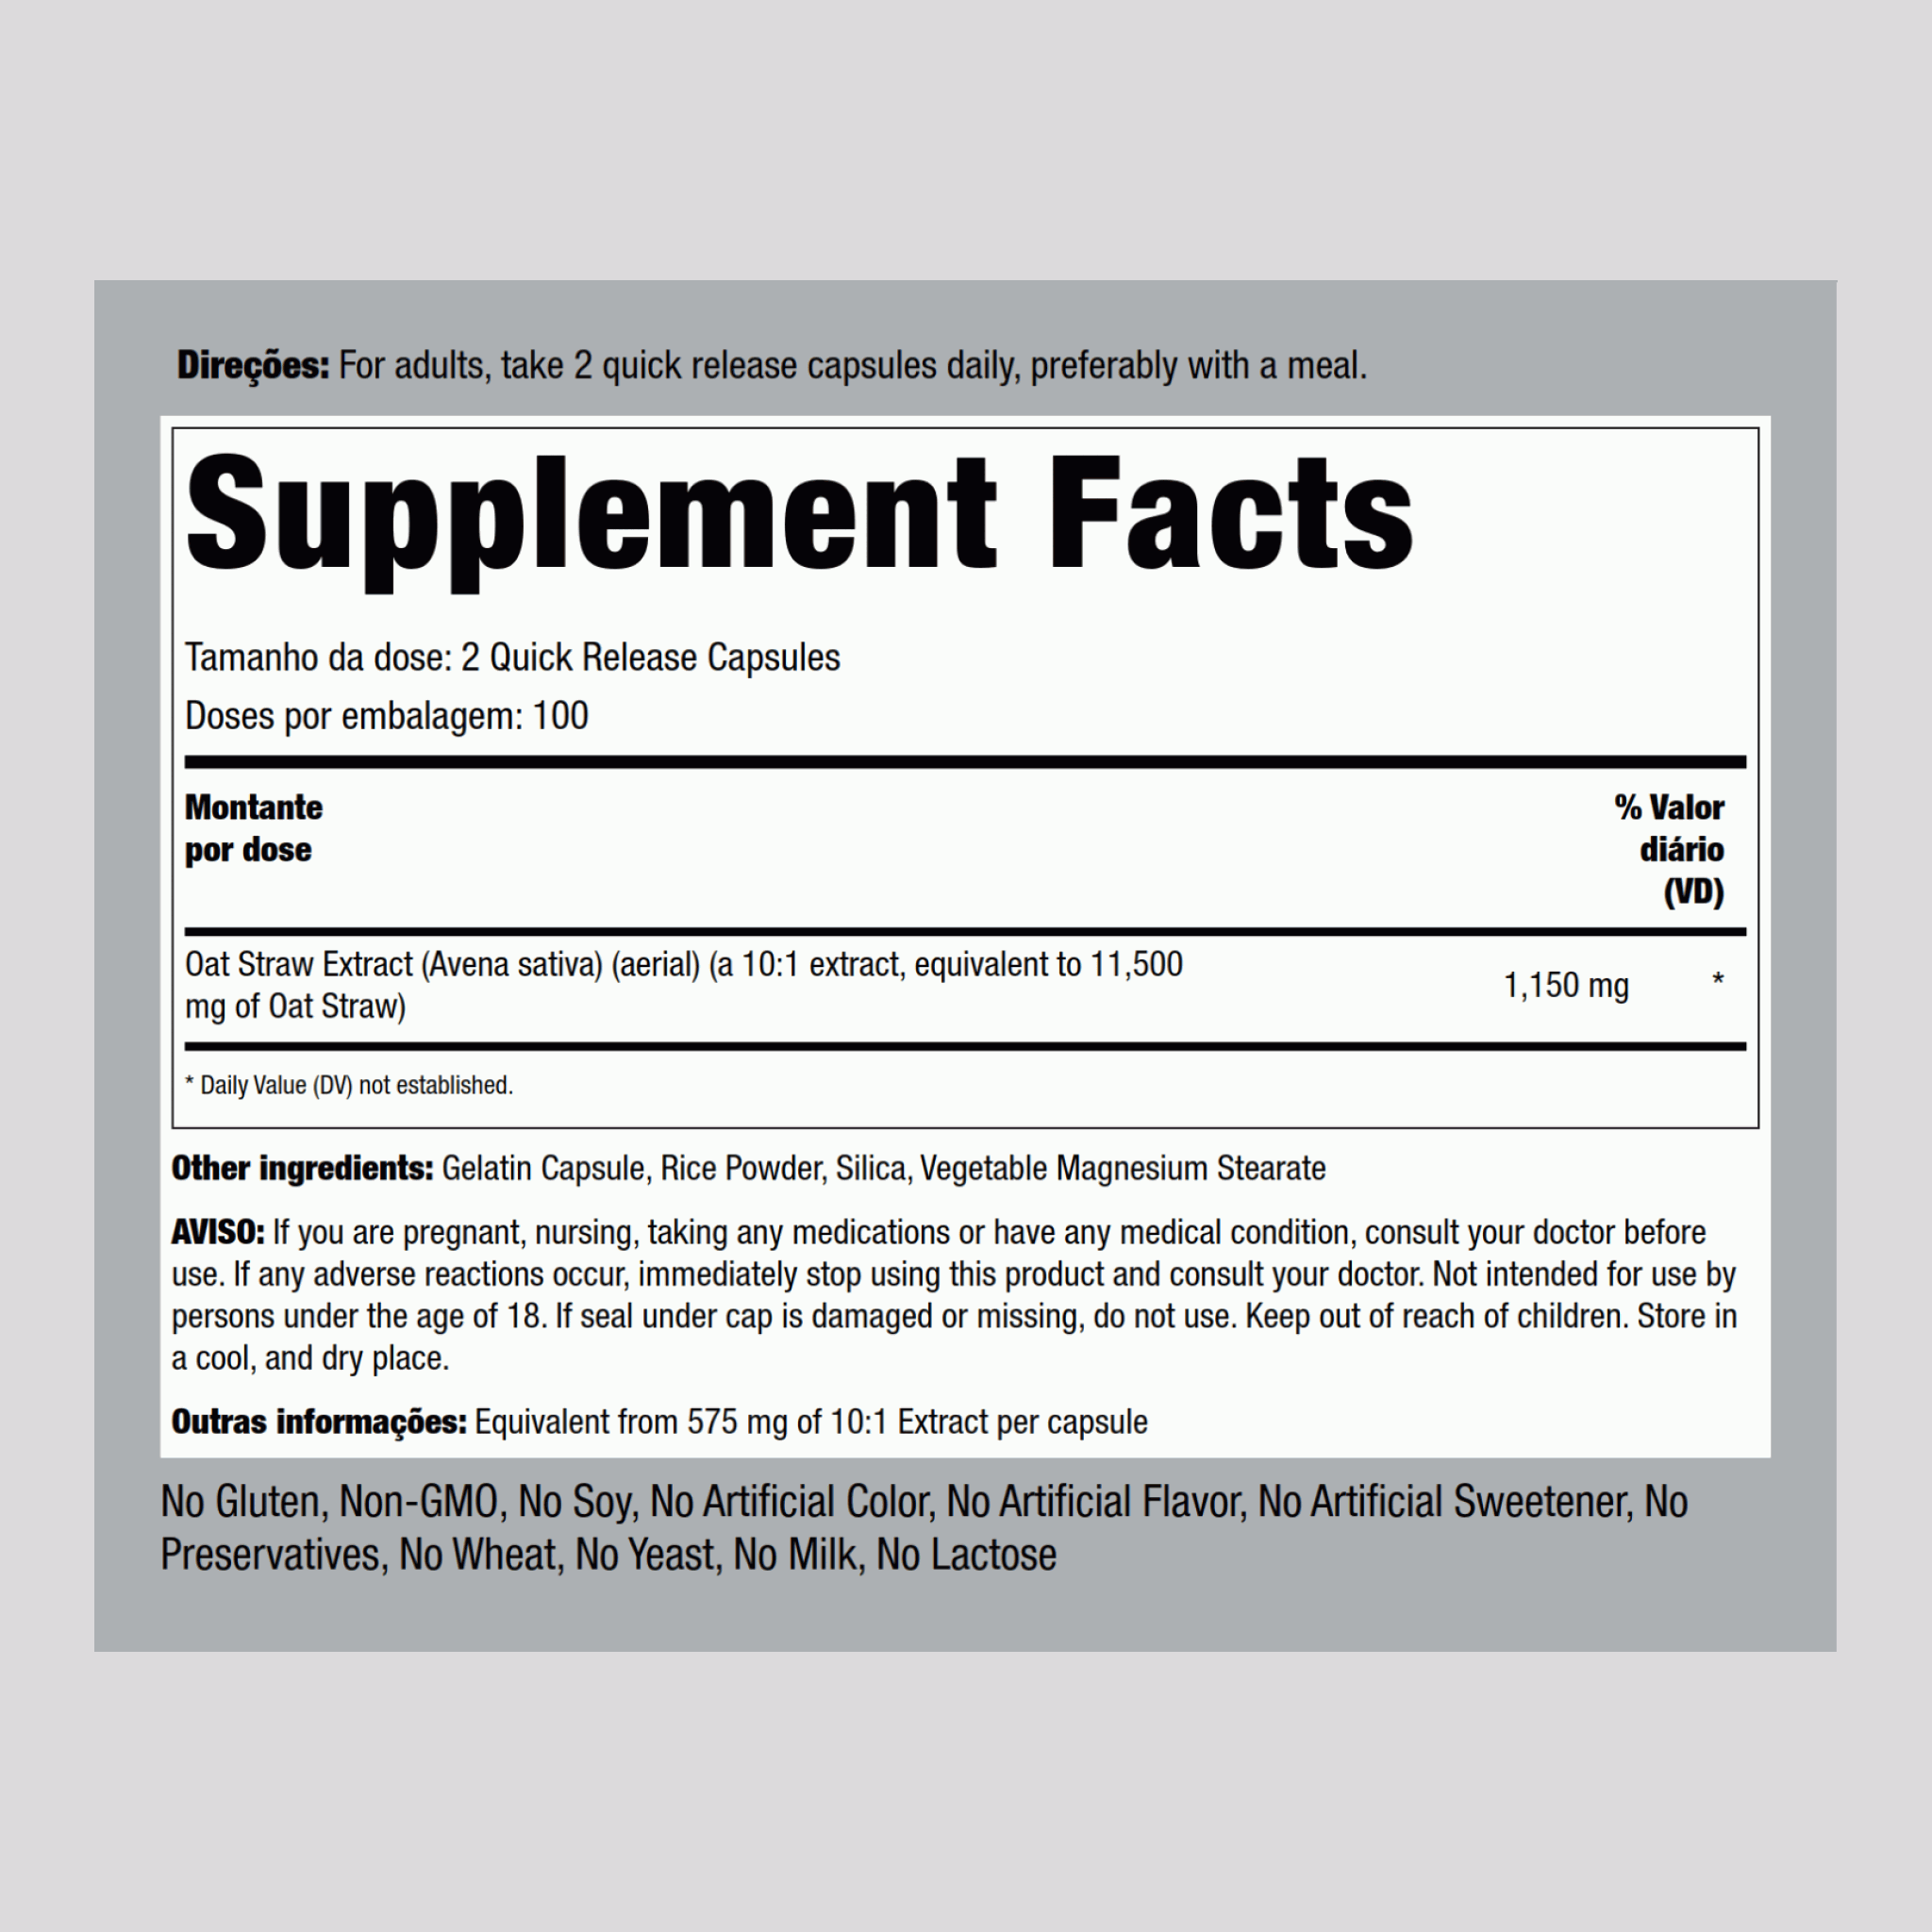 Avena Sativa pour Homme - Endurance Super Puissant,  1150 mg (par portion) 200 Gélules à libération rapide 2 Bouteilles